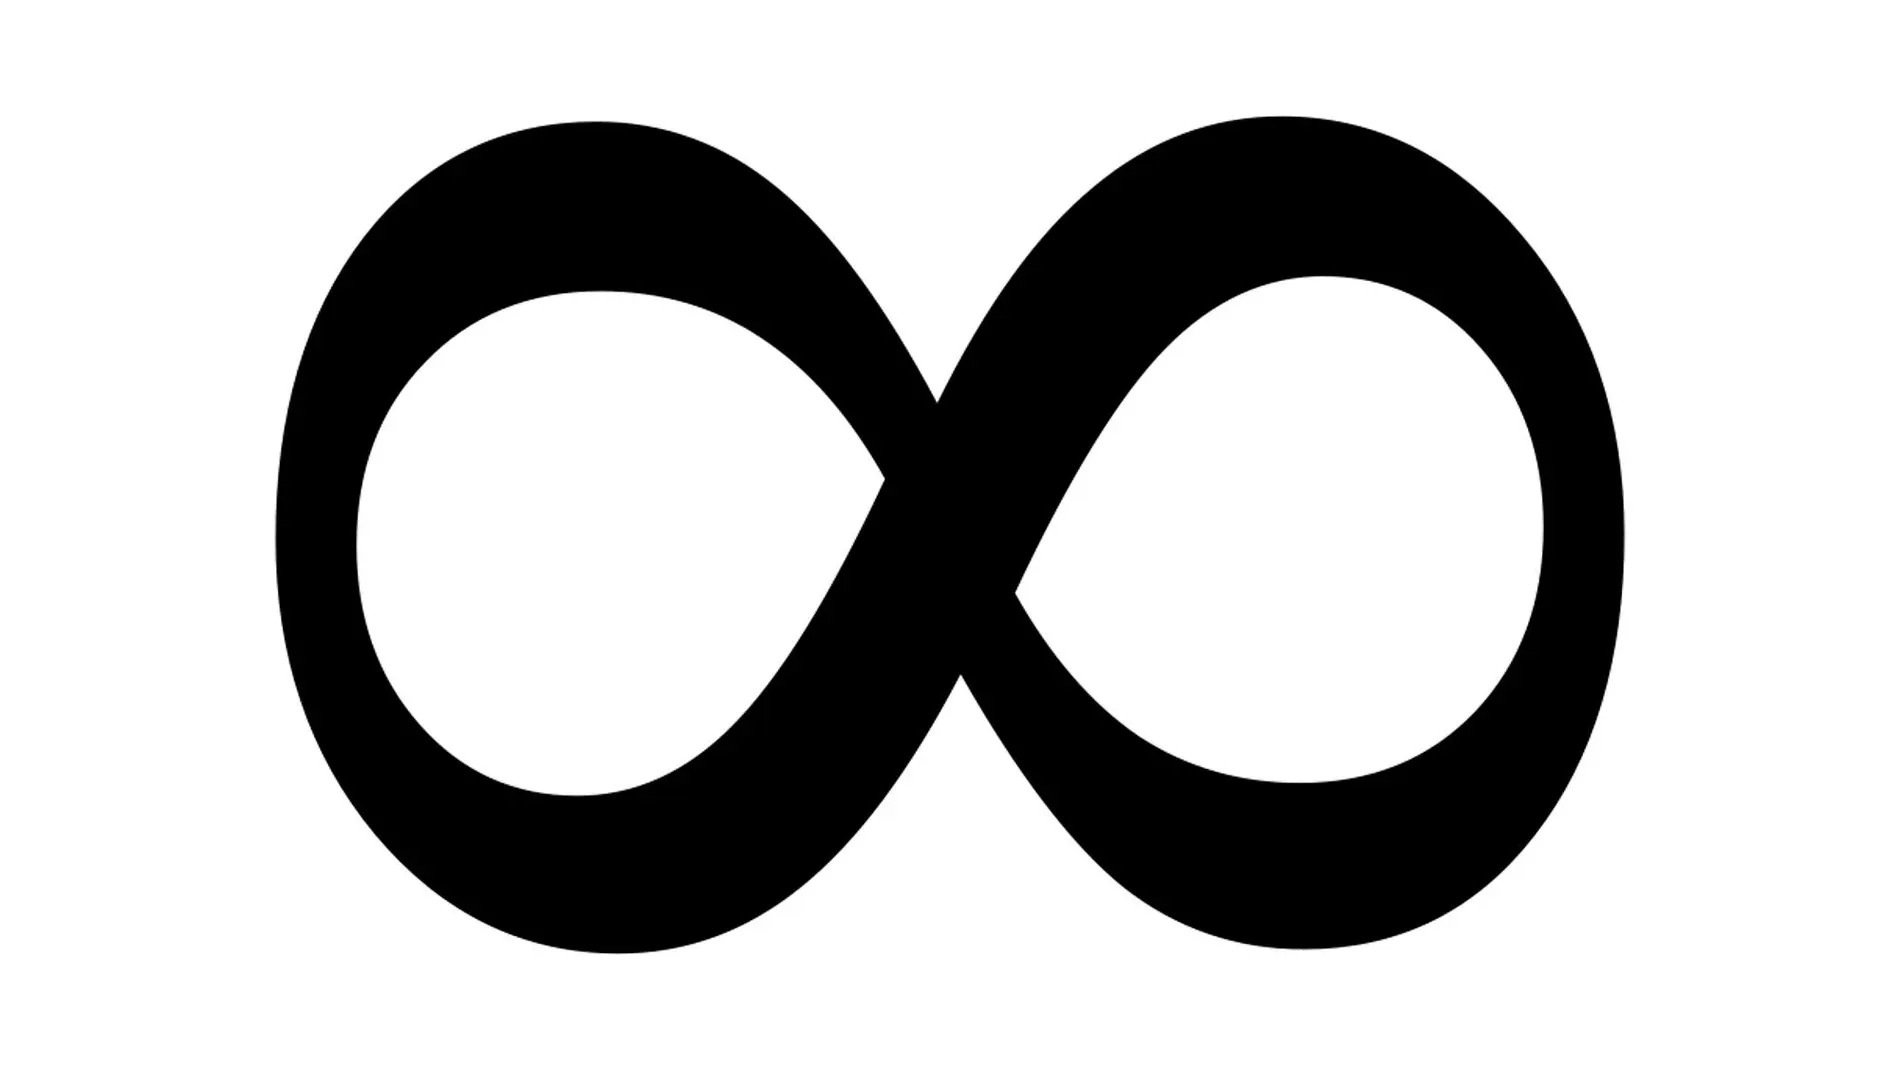 Símbolo de la lemniscata representando el infinito